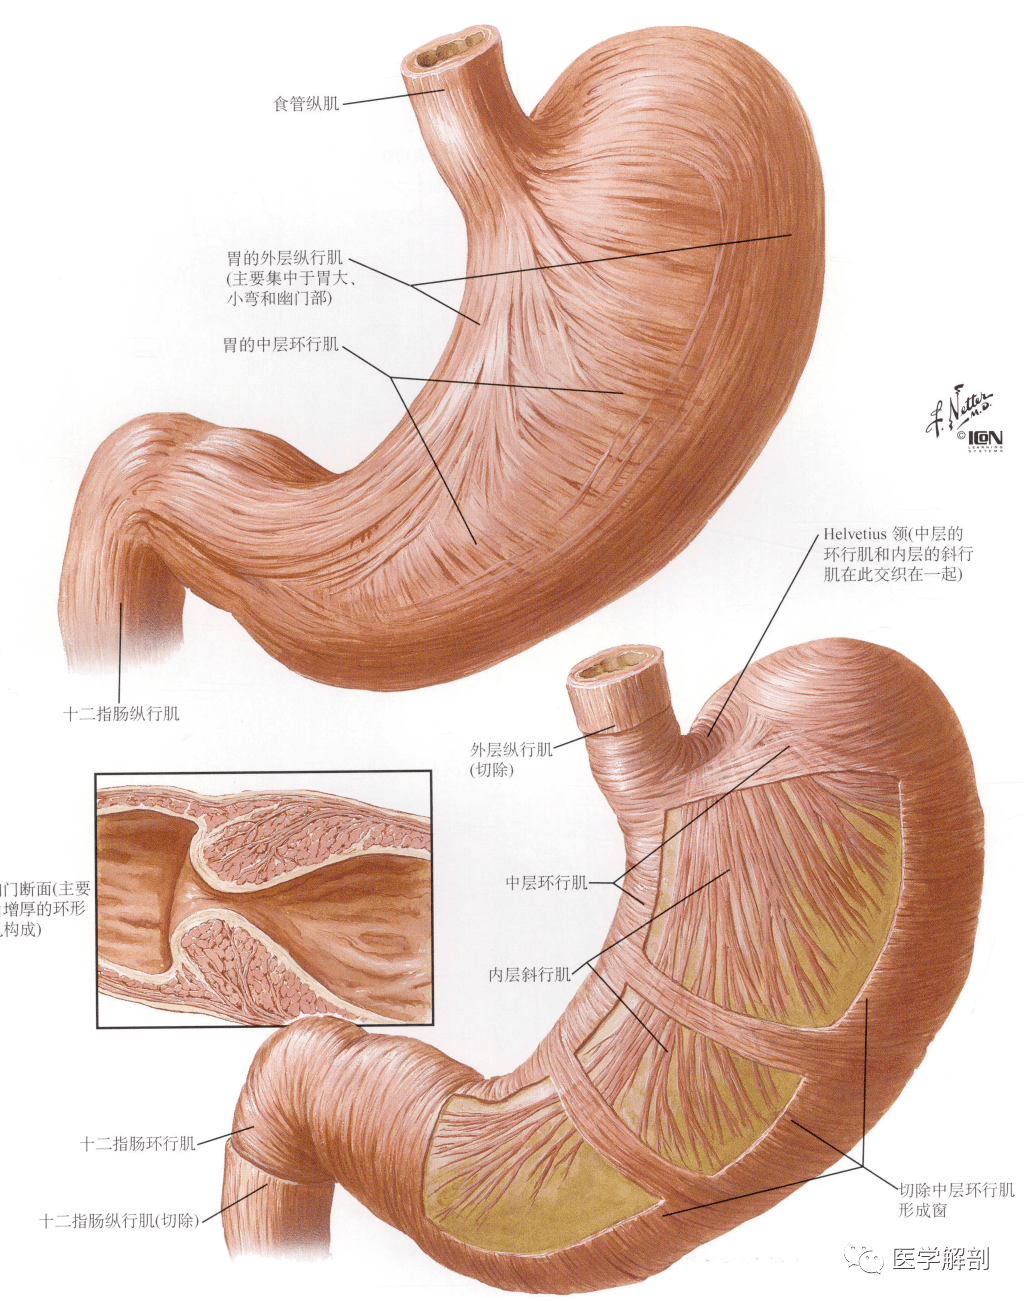 人体解剖学:消化管 | 胃